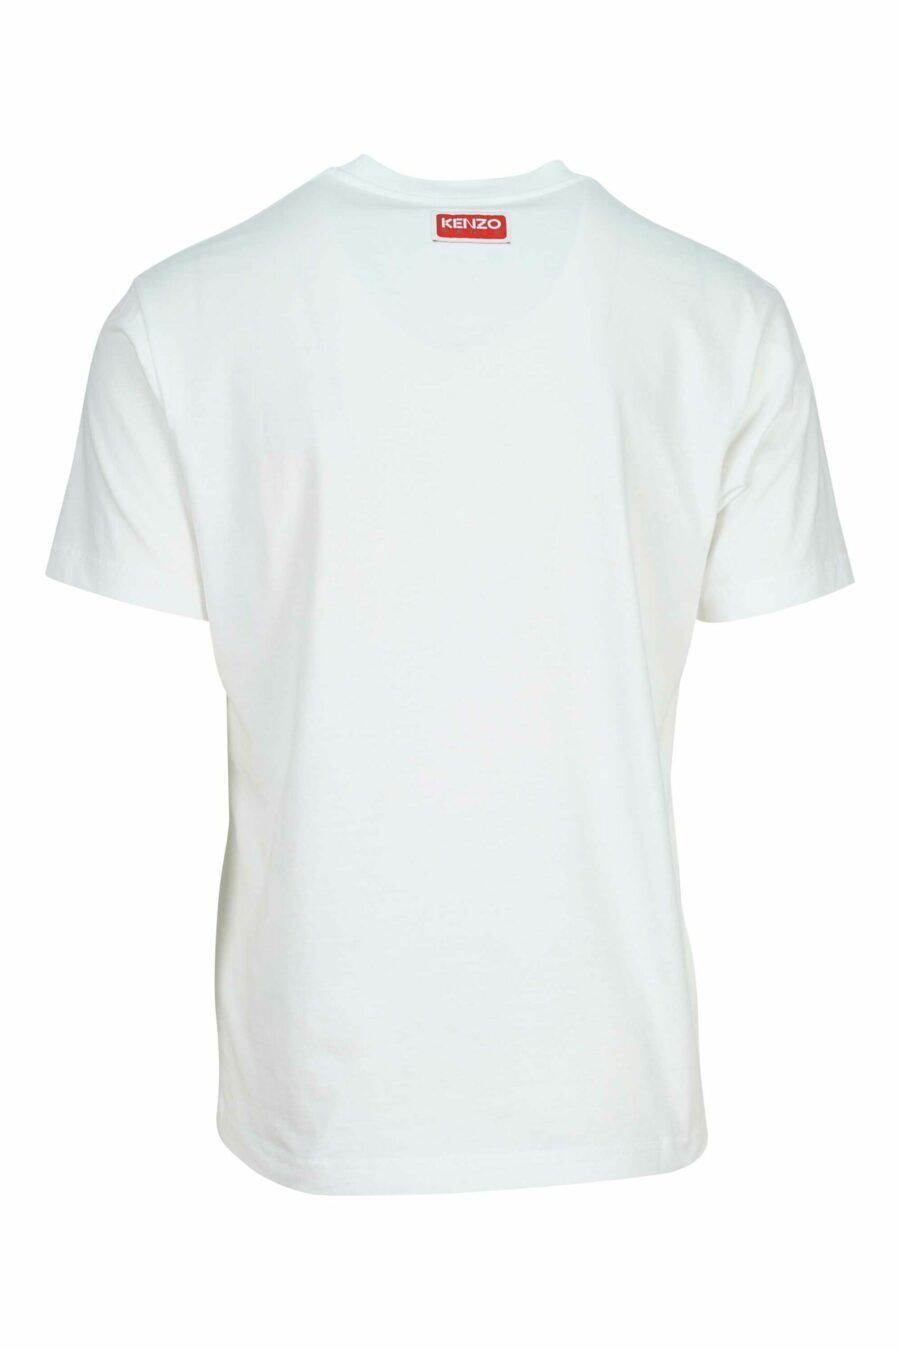 T-shirt branca com maxilogo "kenzo elephant" - 3612230625501 1 à escala